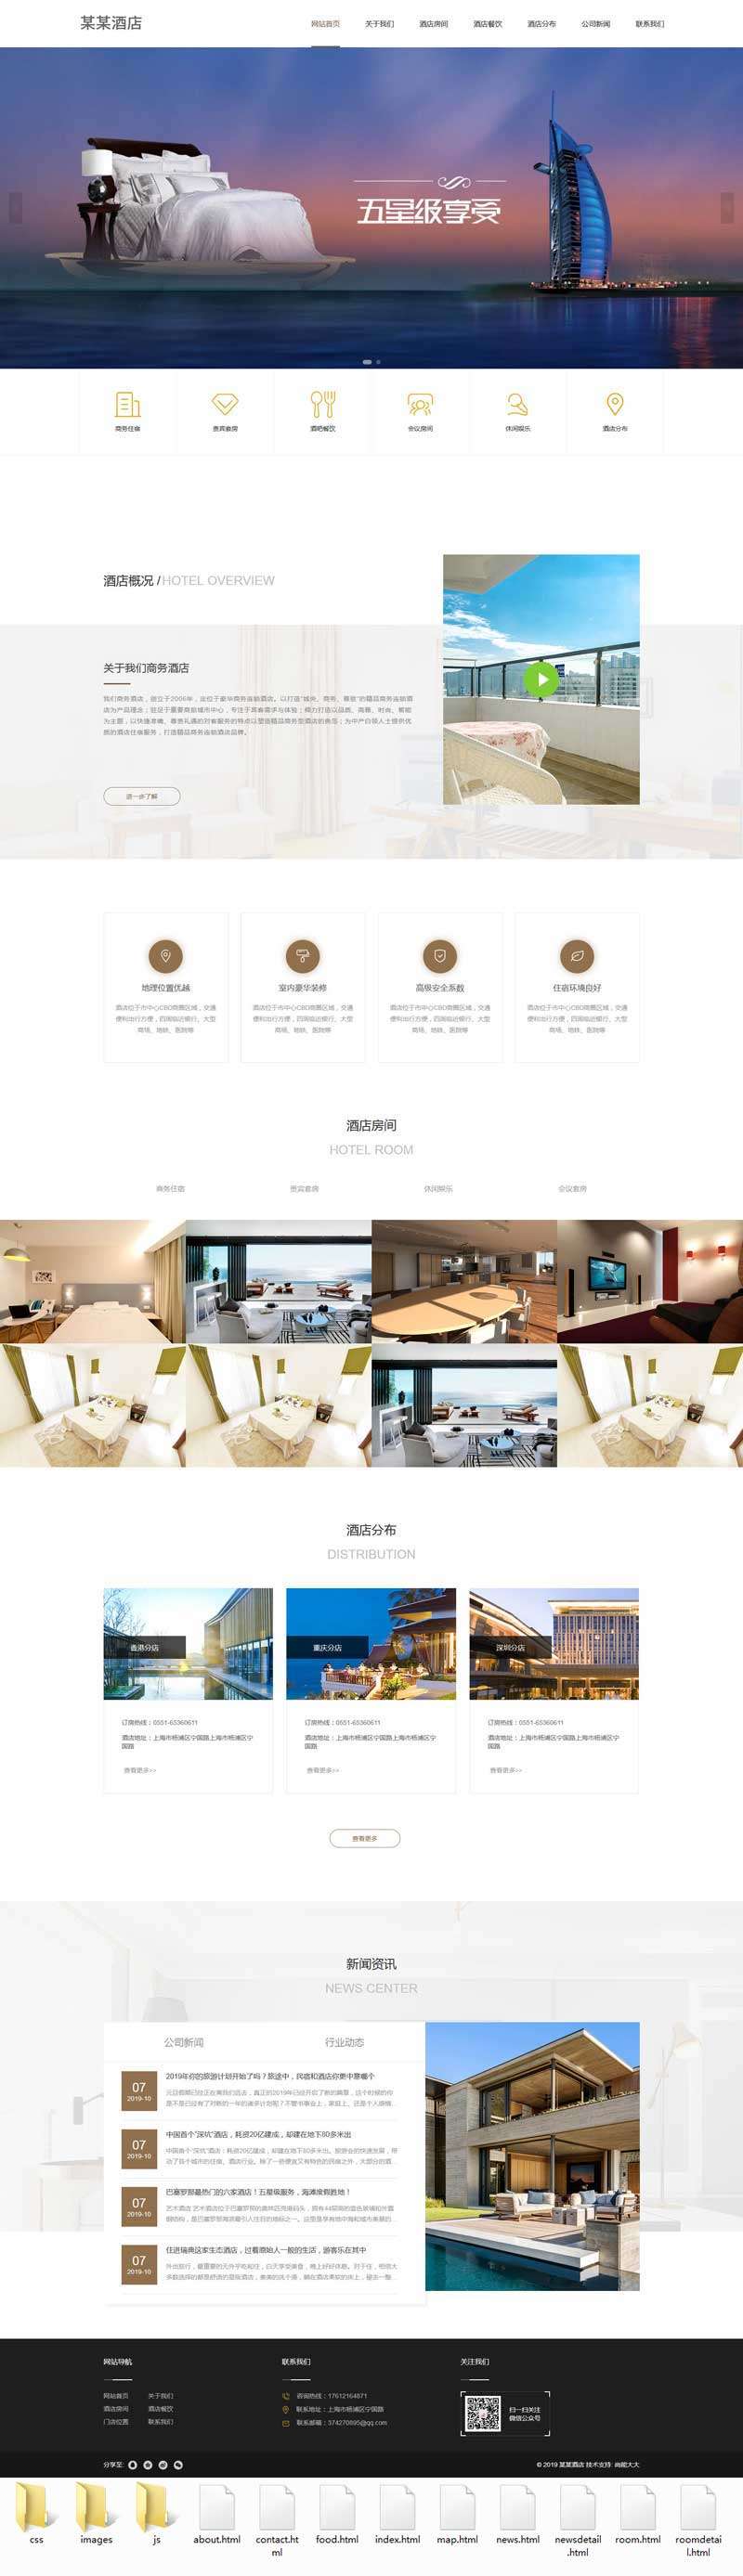 大气响应式HTML酒店展示网站静态模板6302